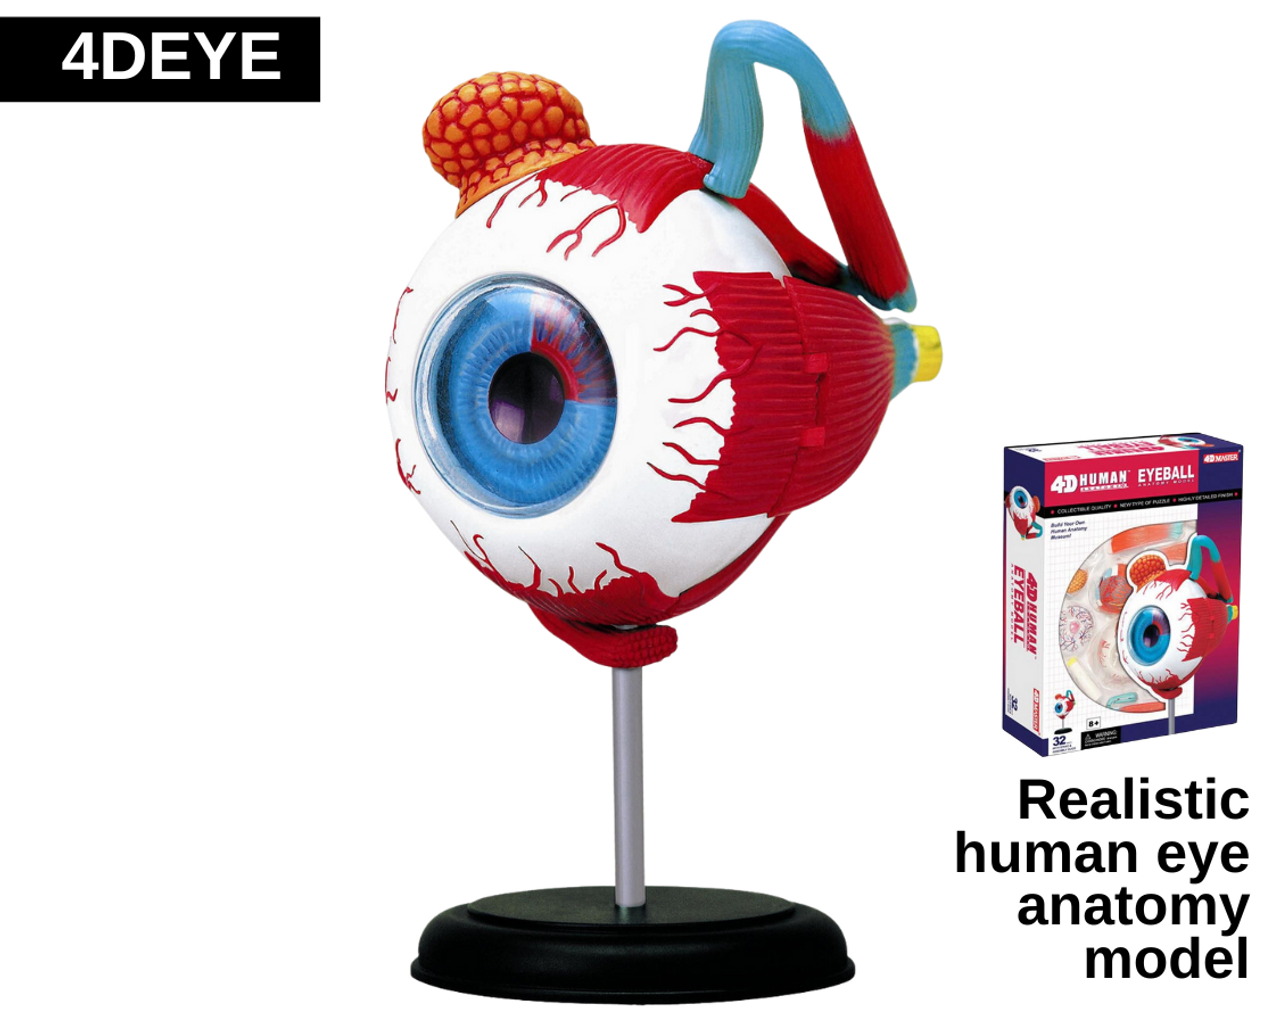 Realistic human eye anatomy model.